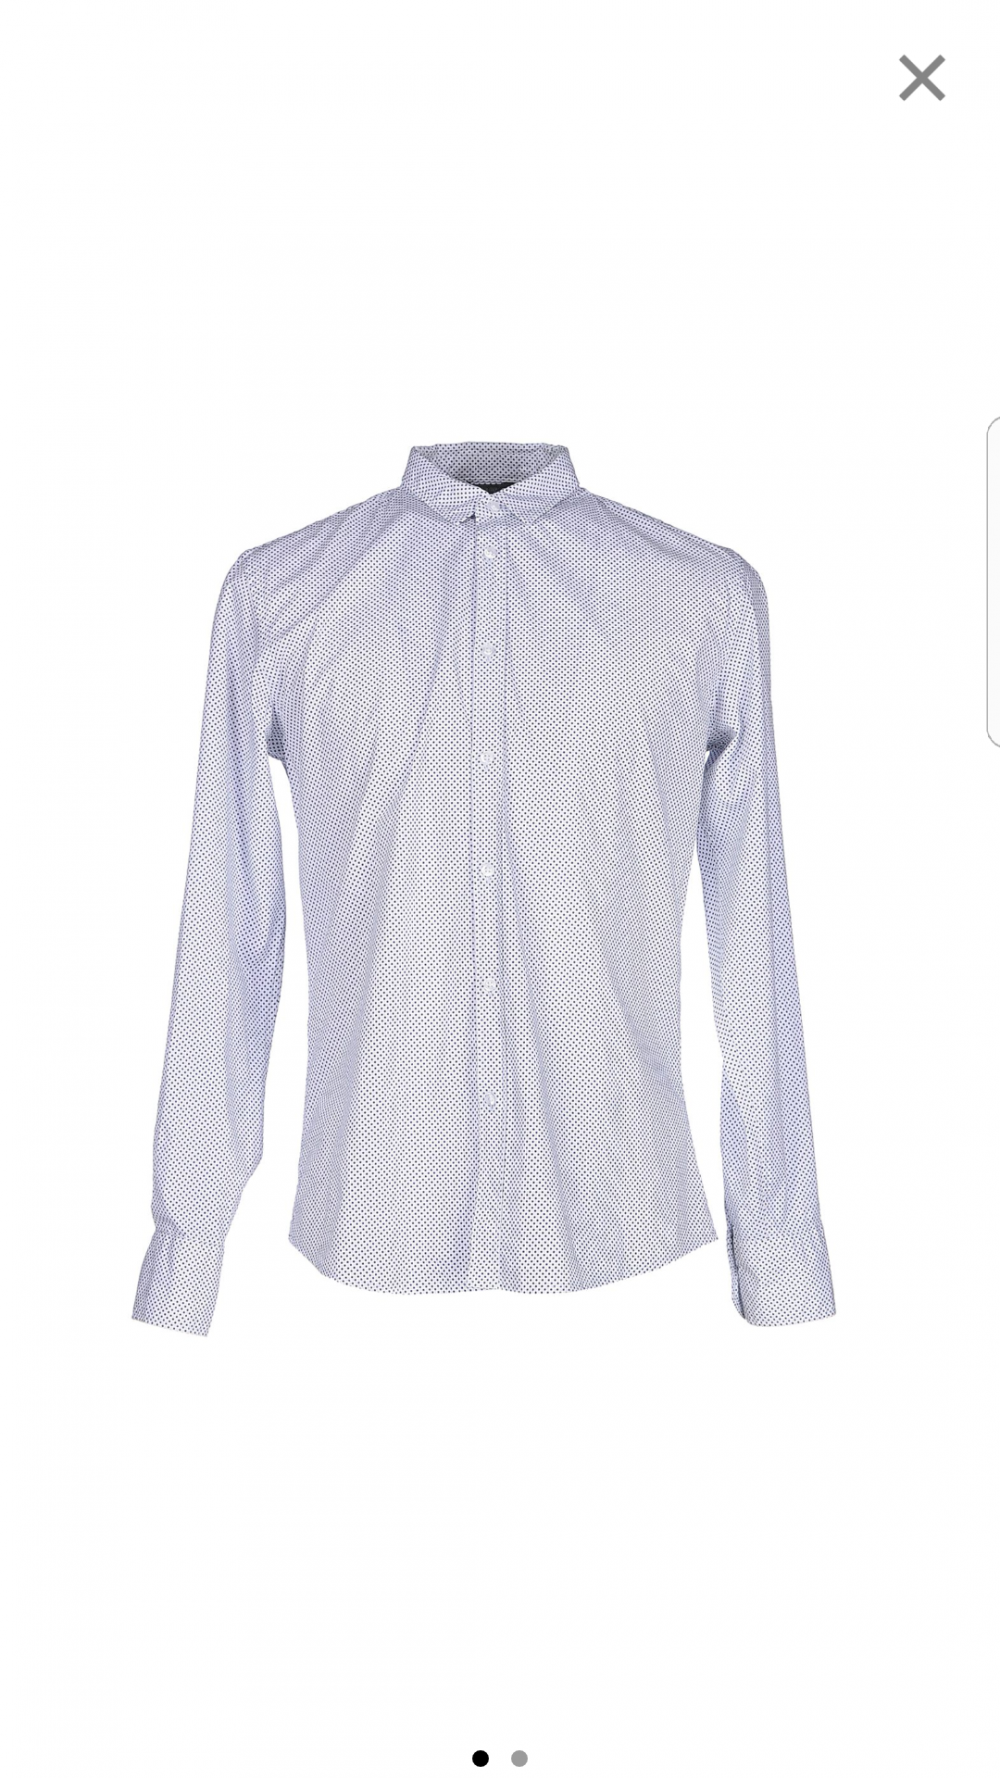 Продам рубашку мужскую размер L,  26.7 TWENTYSIXSEVEN (Италия)